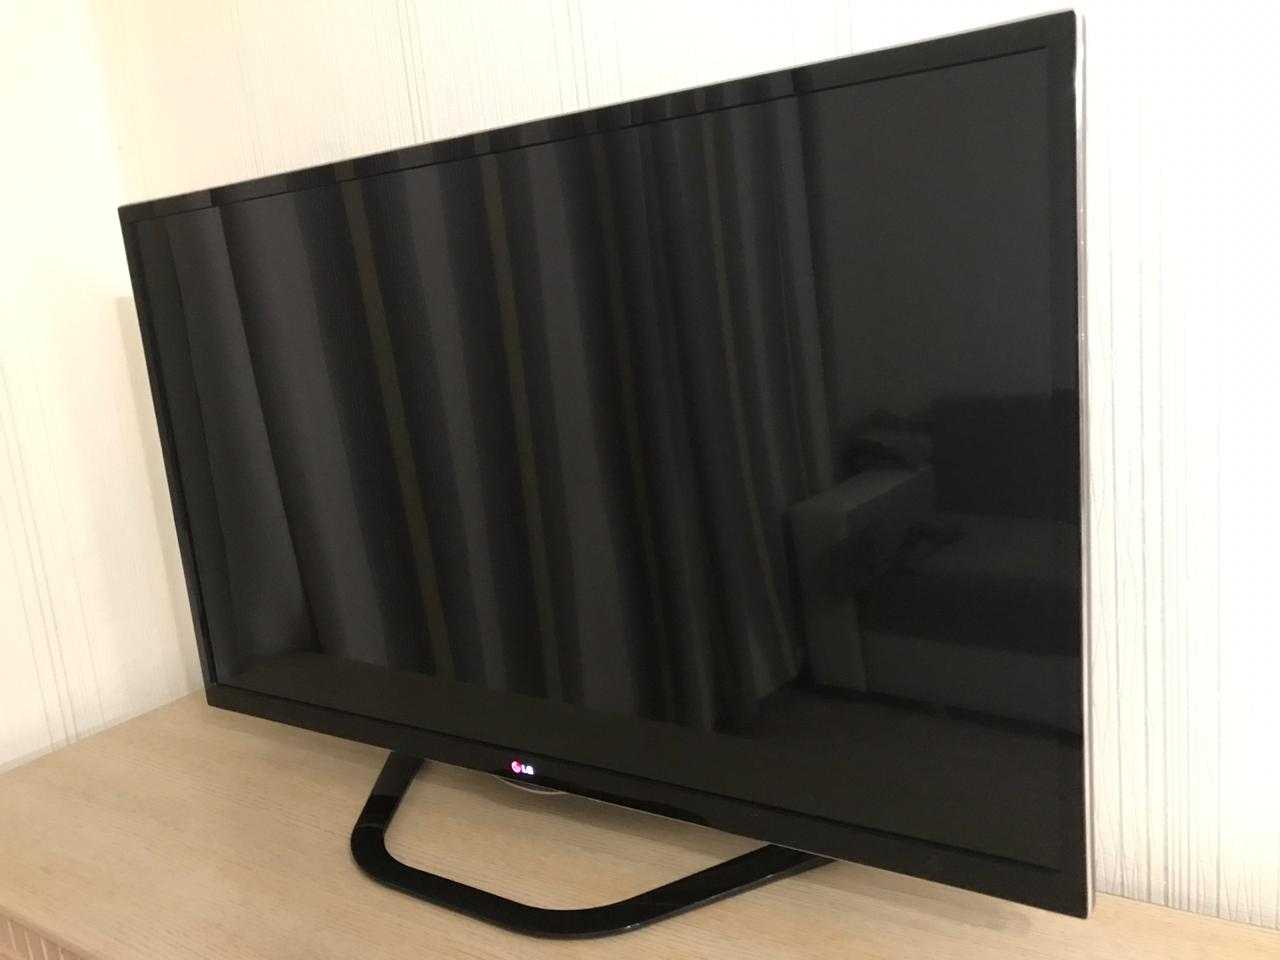 Телевизор led lg 47la690v - купить , скидки, цена, отзывы, обзор, характеристики - телевизоры